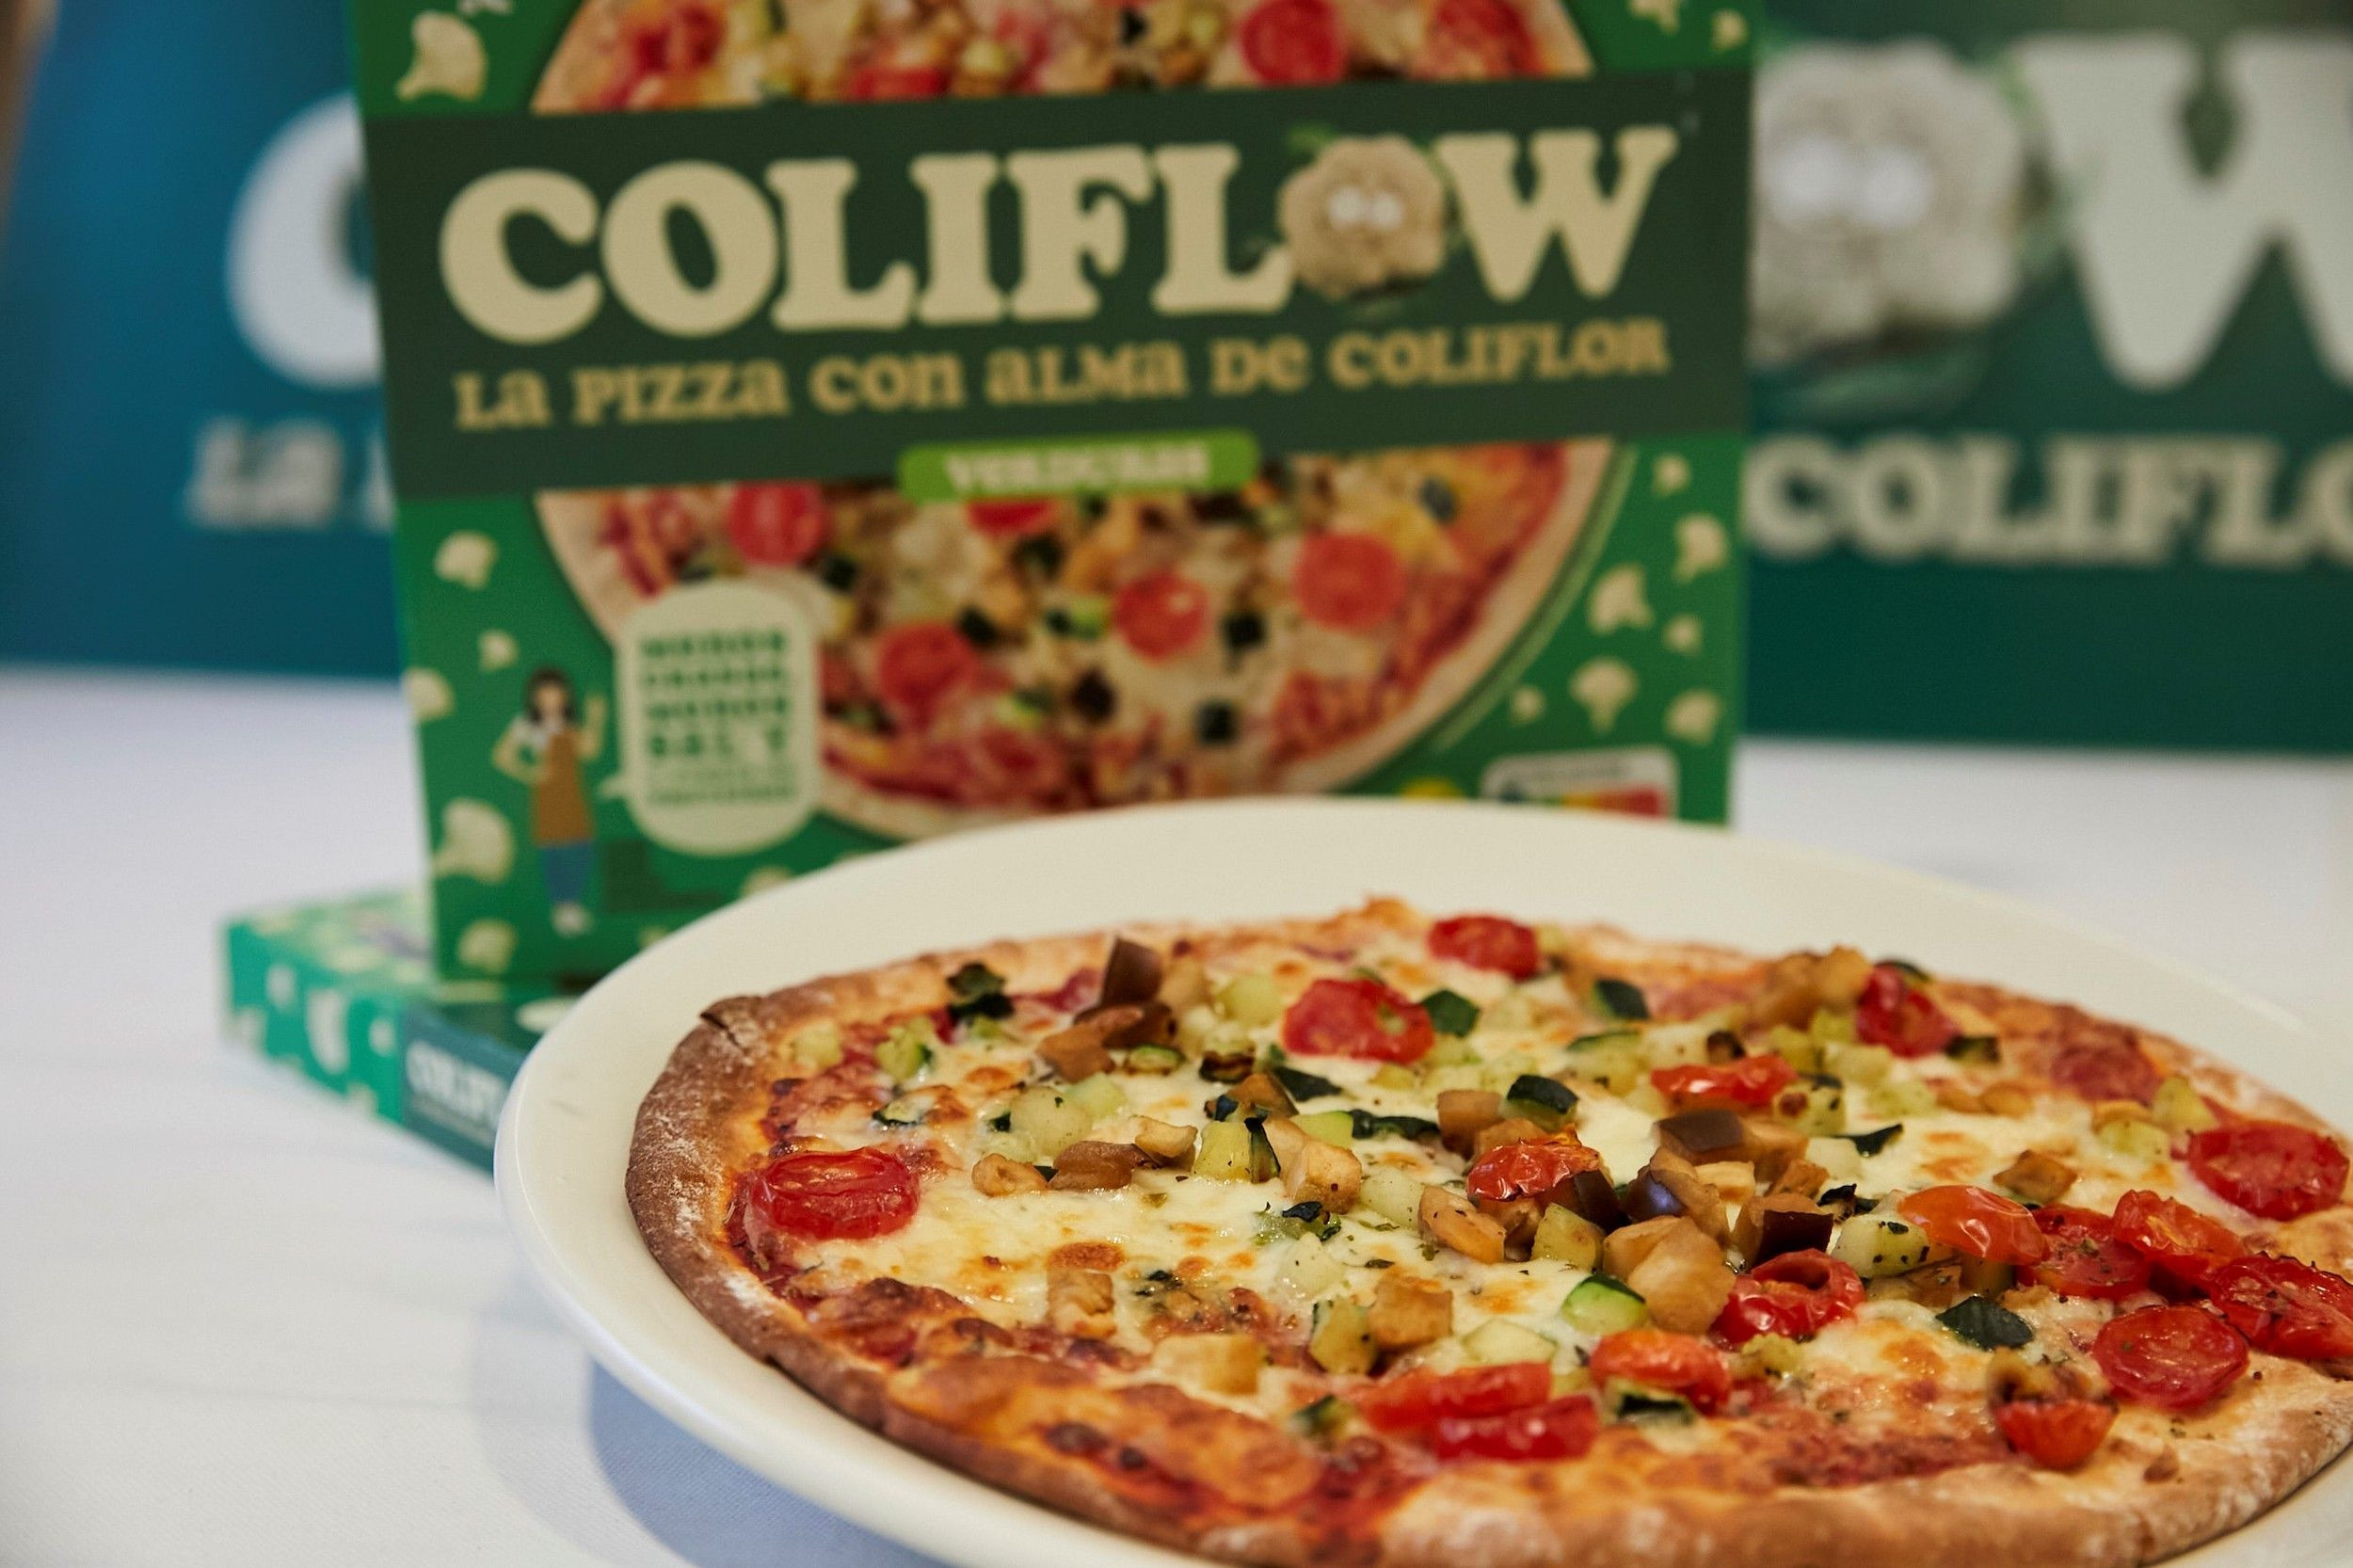 Coliflow, la marca de pizzas saludables con base de coliflor / SERVIMEDIA